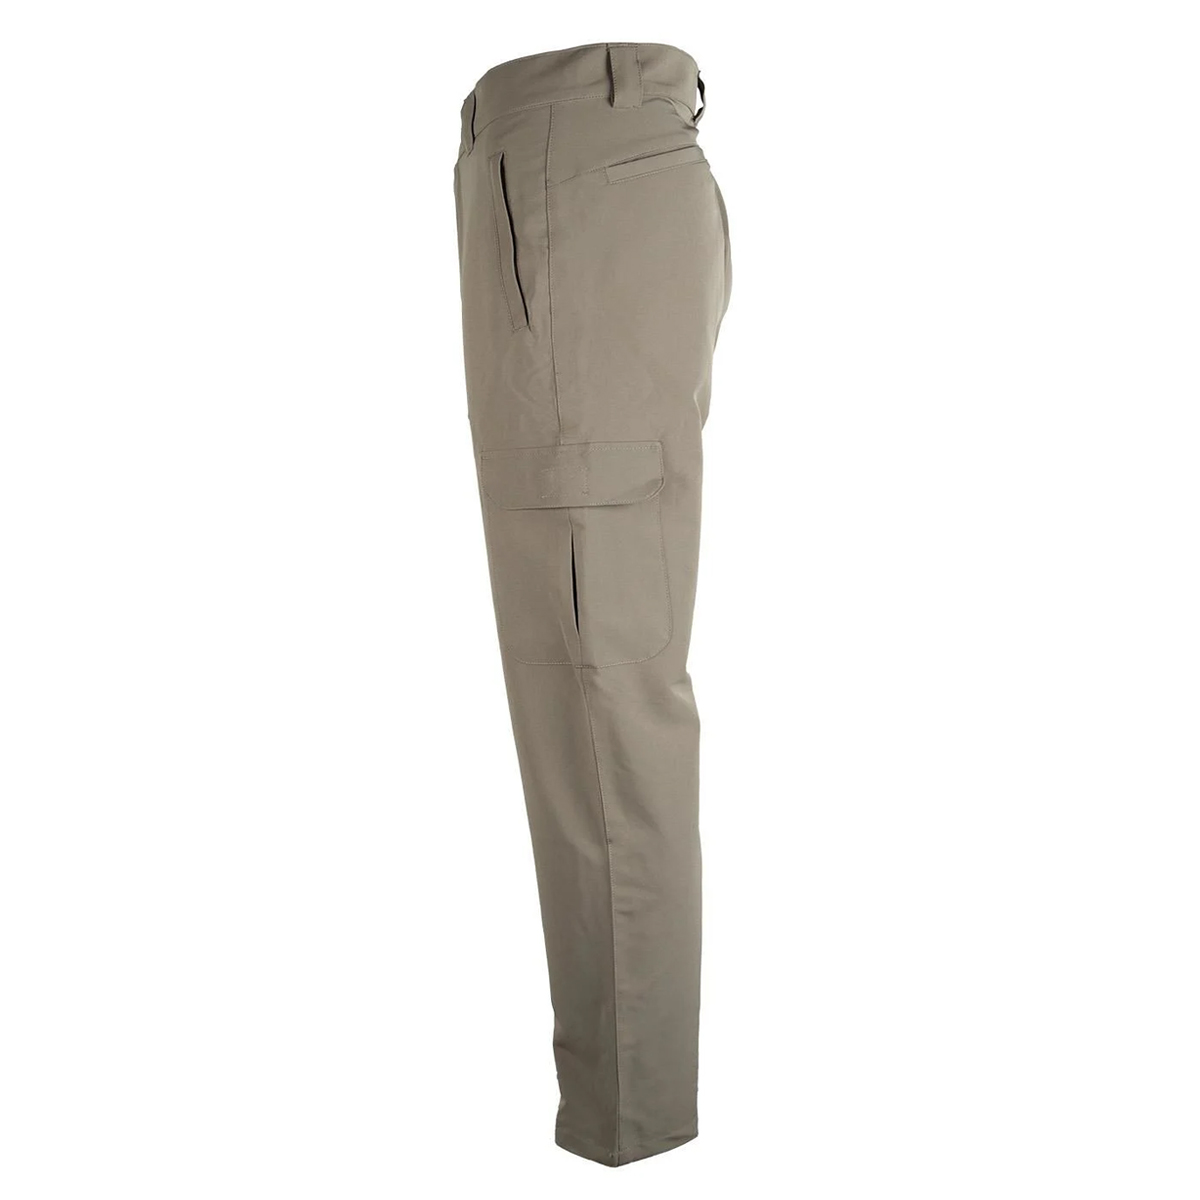 Likralı yırtılmaya dayanıklı esnek kargo pantolon altı cepli kemer ile kullanıma uygun